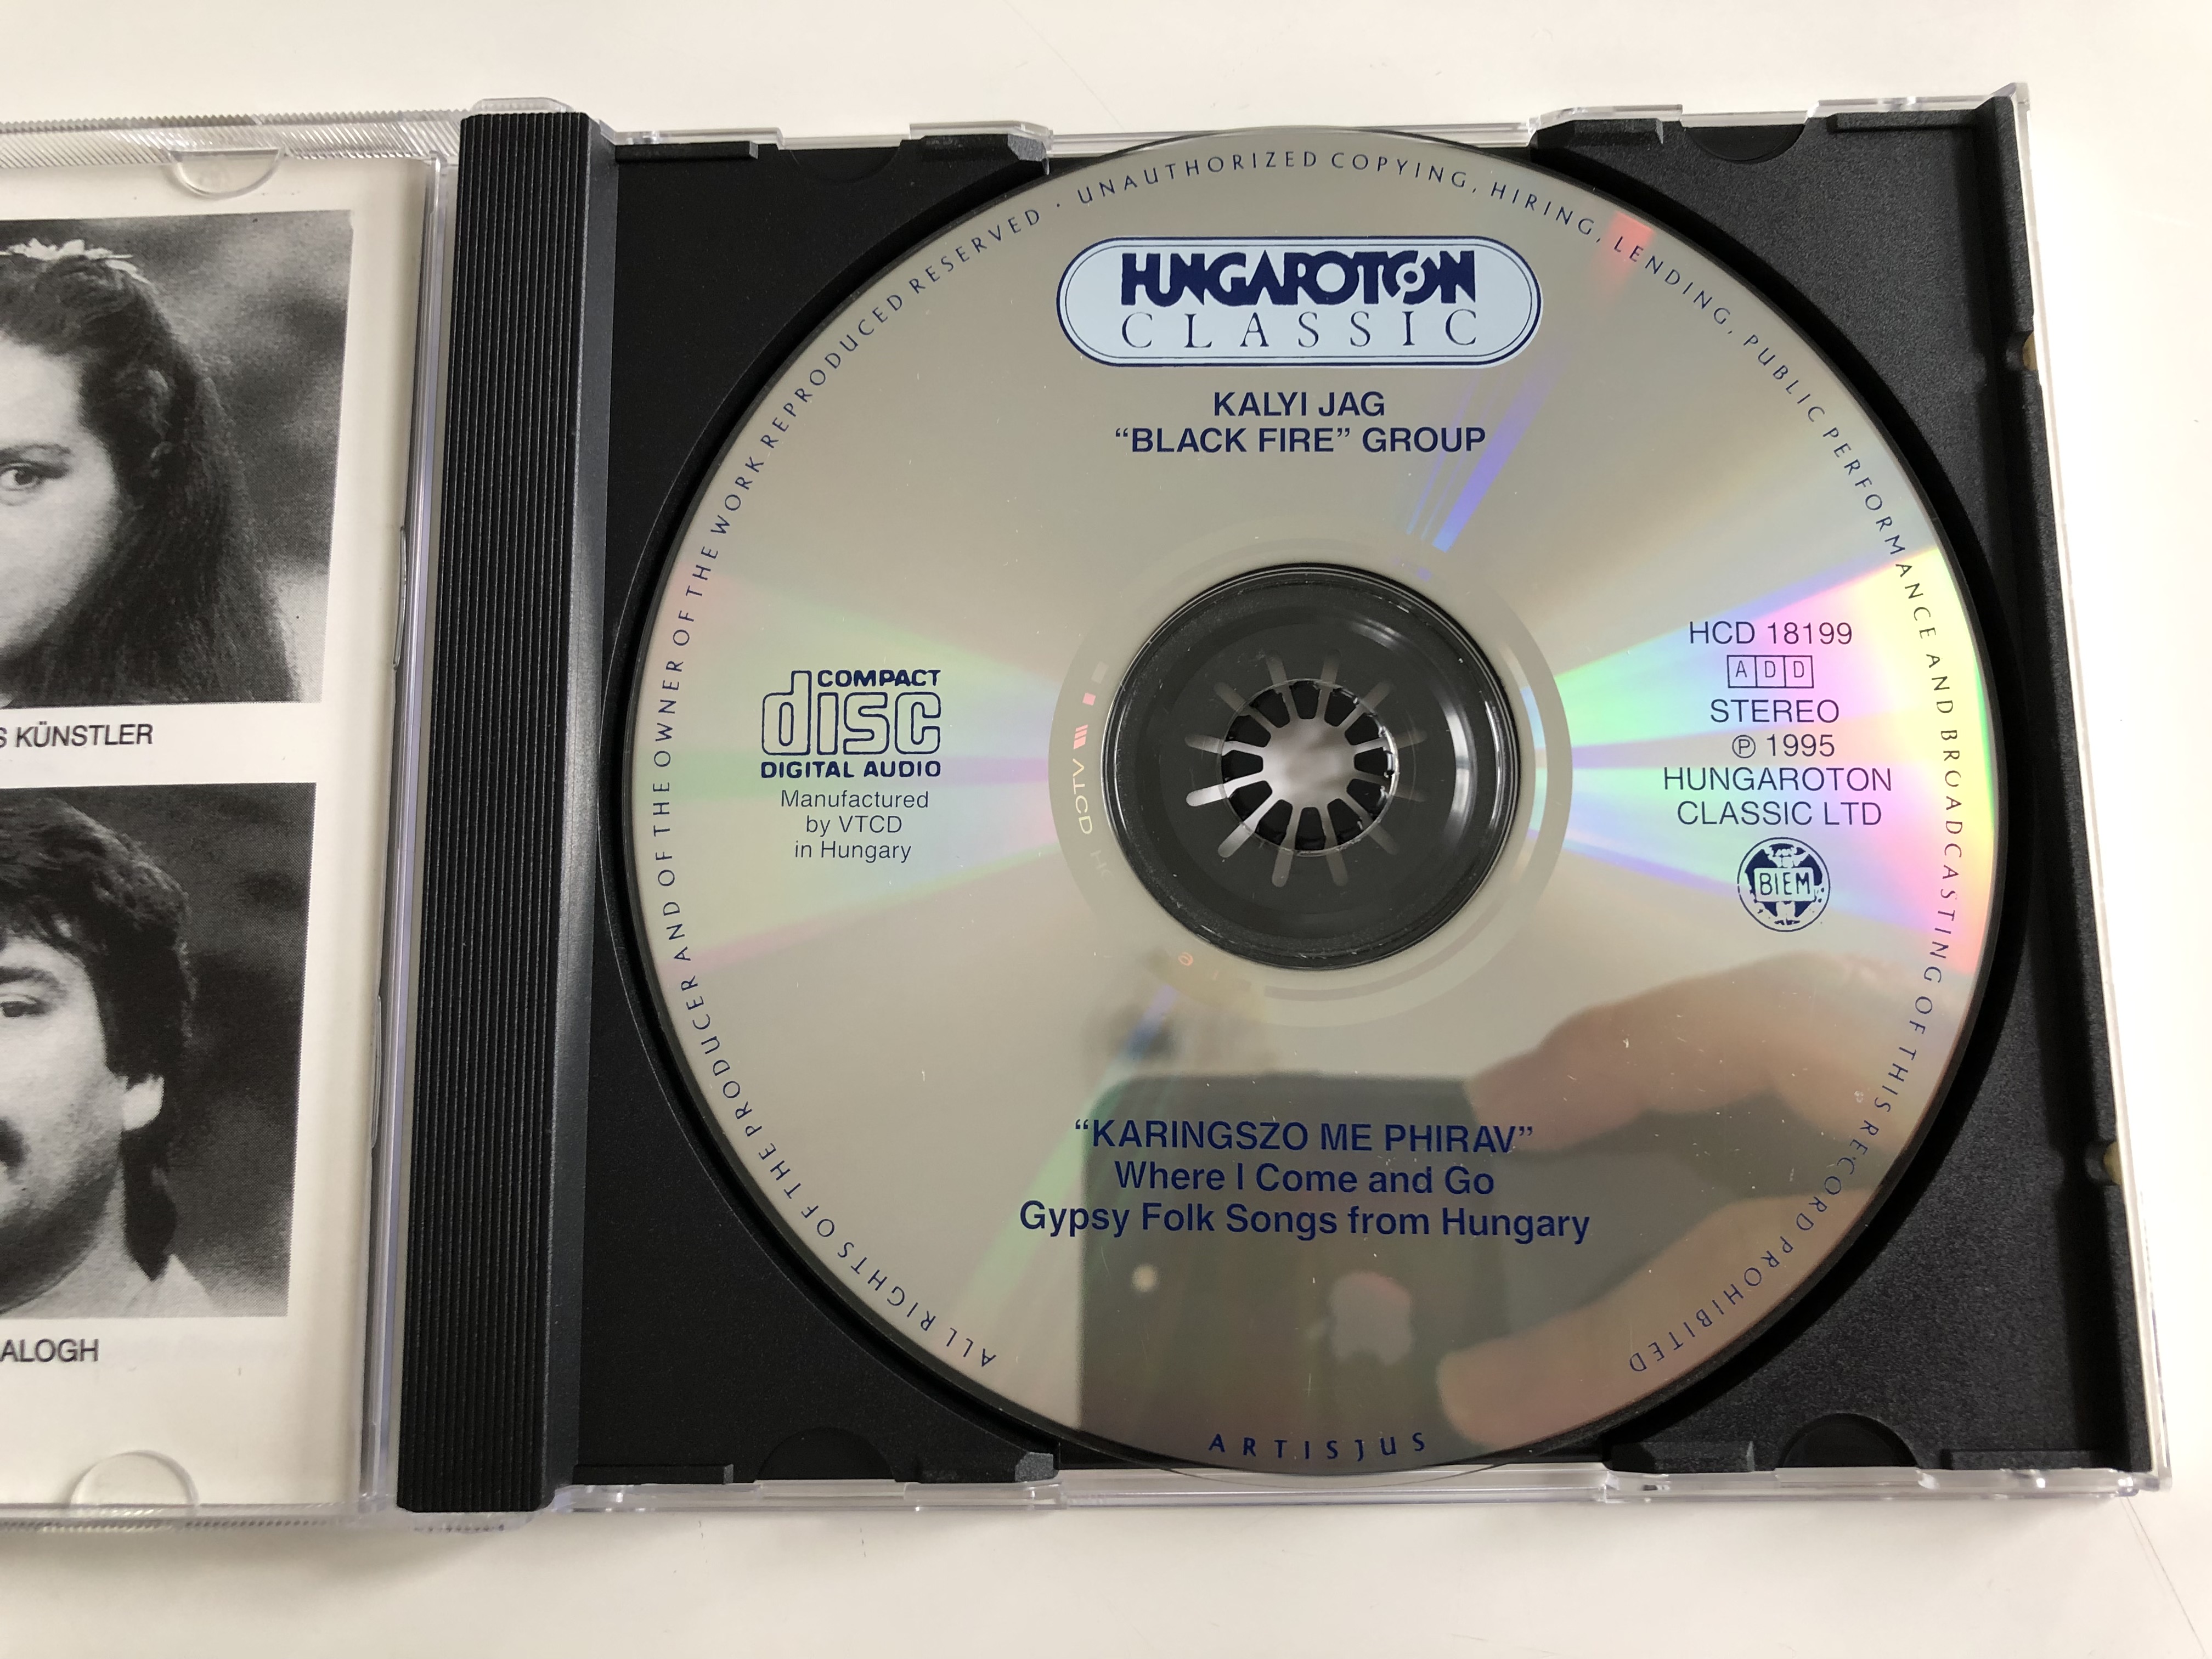 -karingszo-me-phirav-gypsy-folk-songs-from-hungary-kalyi-jag-black-fire-group-hungaroton-audio-cd-1995-stereo-hcd-18199-13-.jpg